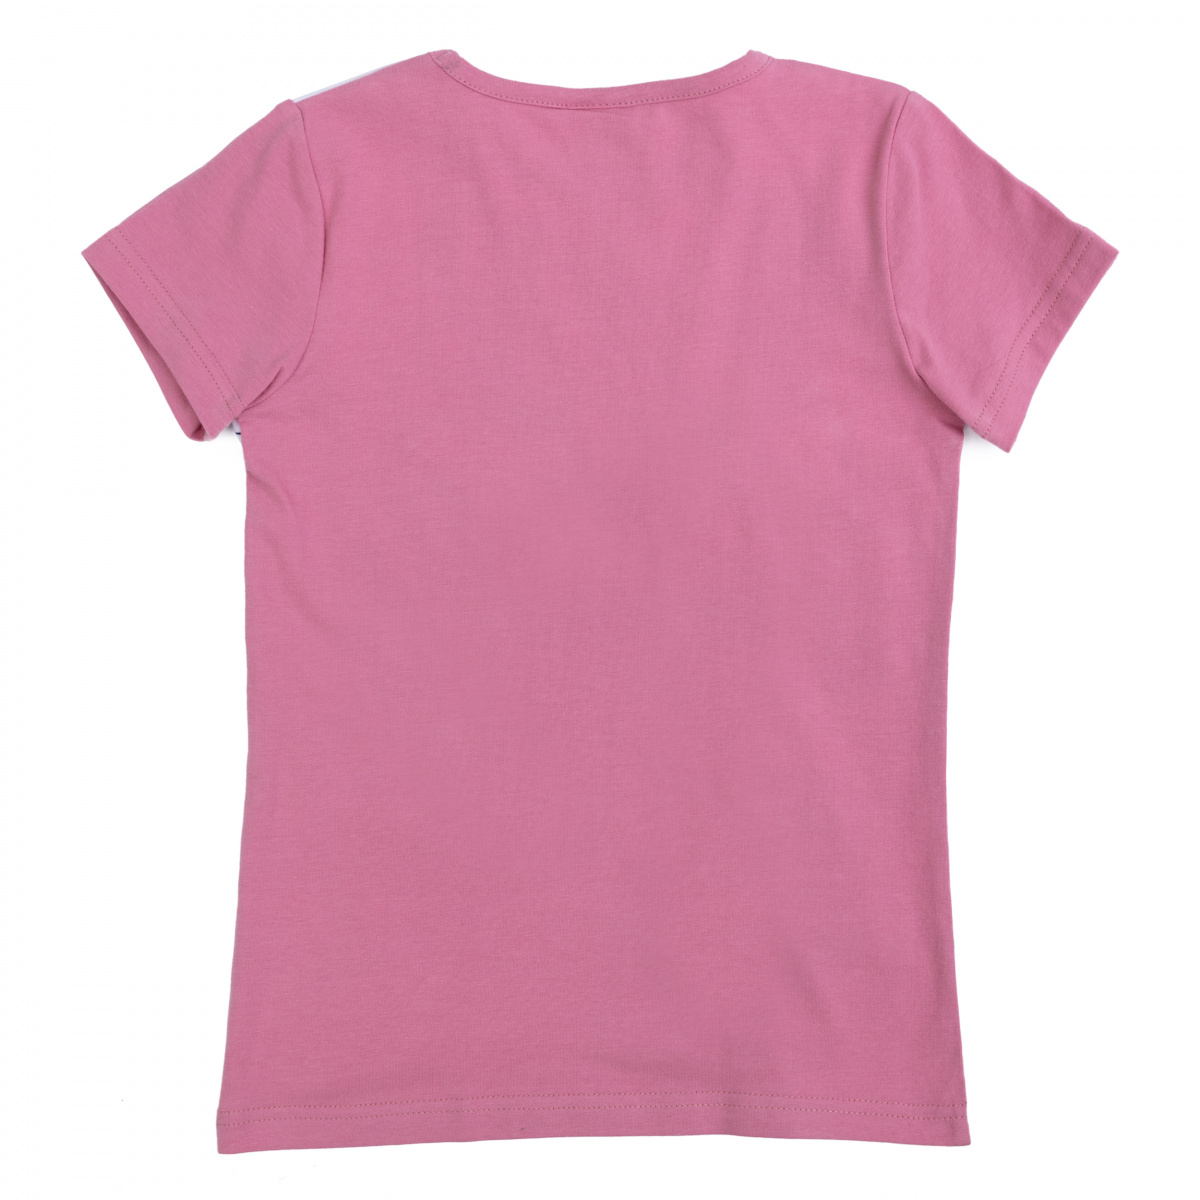 Розовая футболка для девочки. Бледно розовая футболка. Футболка для девочки розовая. Розово белая футболка. Майка для девочек розовая.